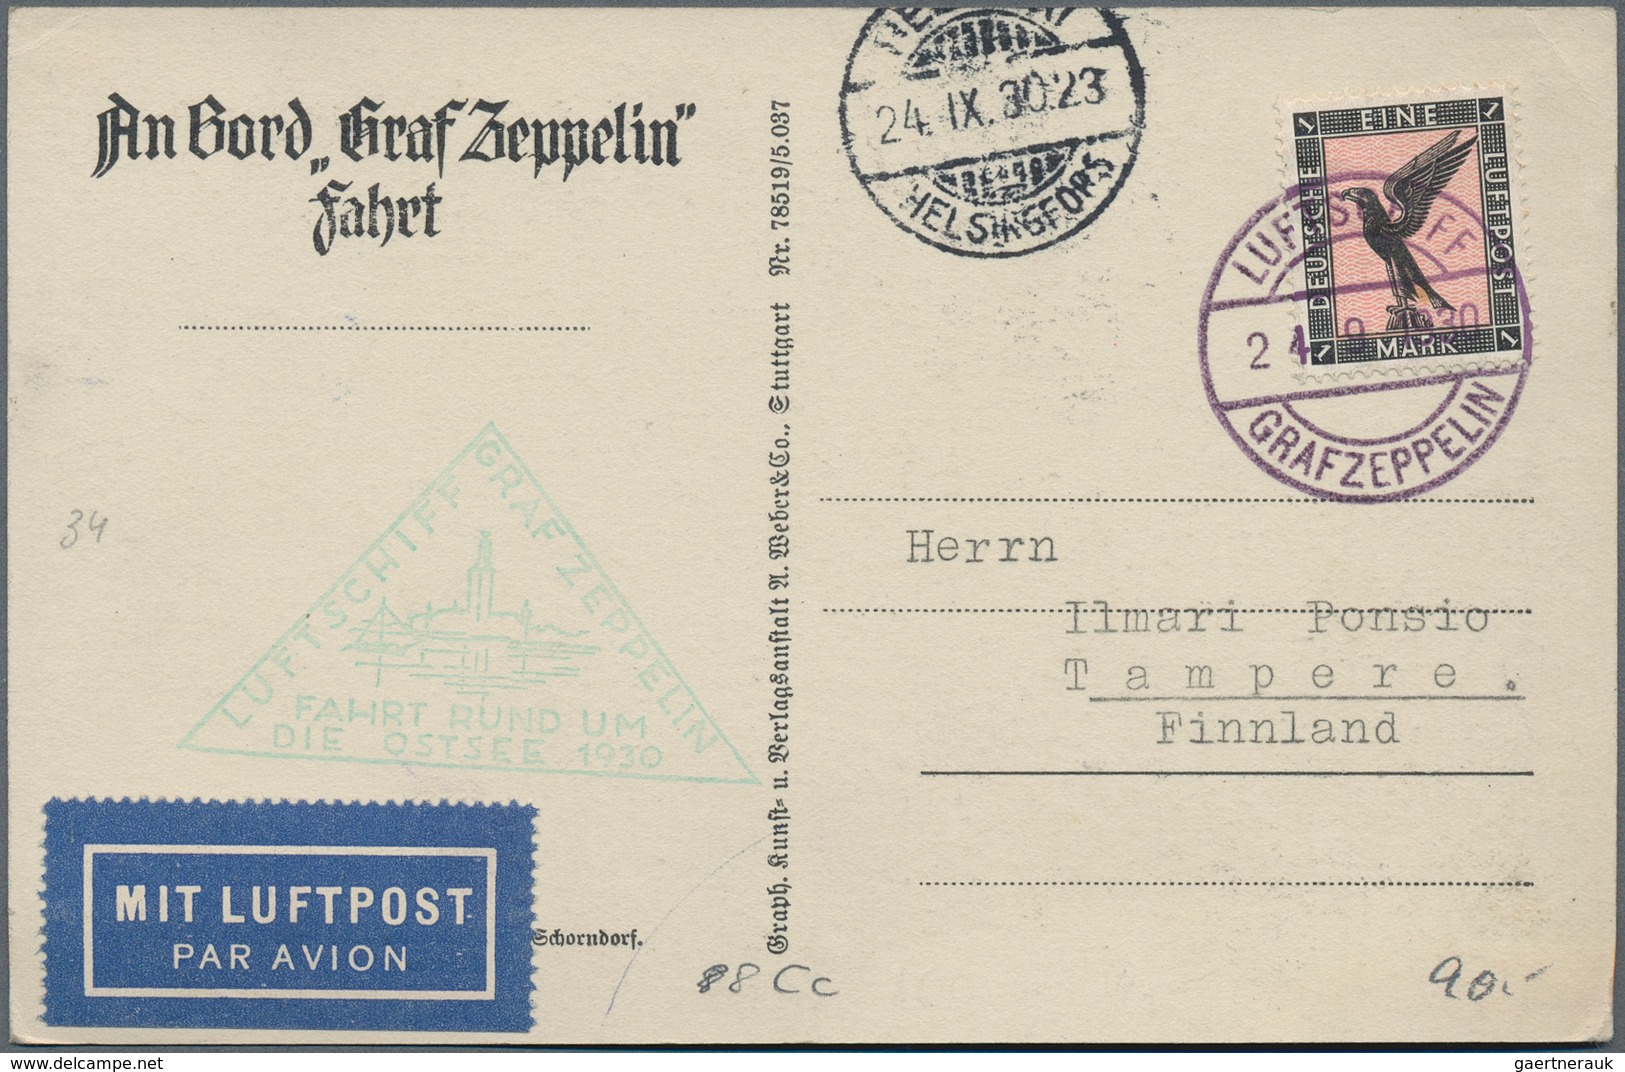 Zeppelinpost Deutschland: Collection of over 100 Zeppelin items, around 70 flown covers and 33 Schue